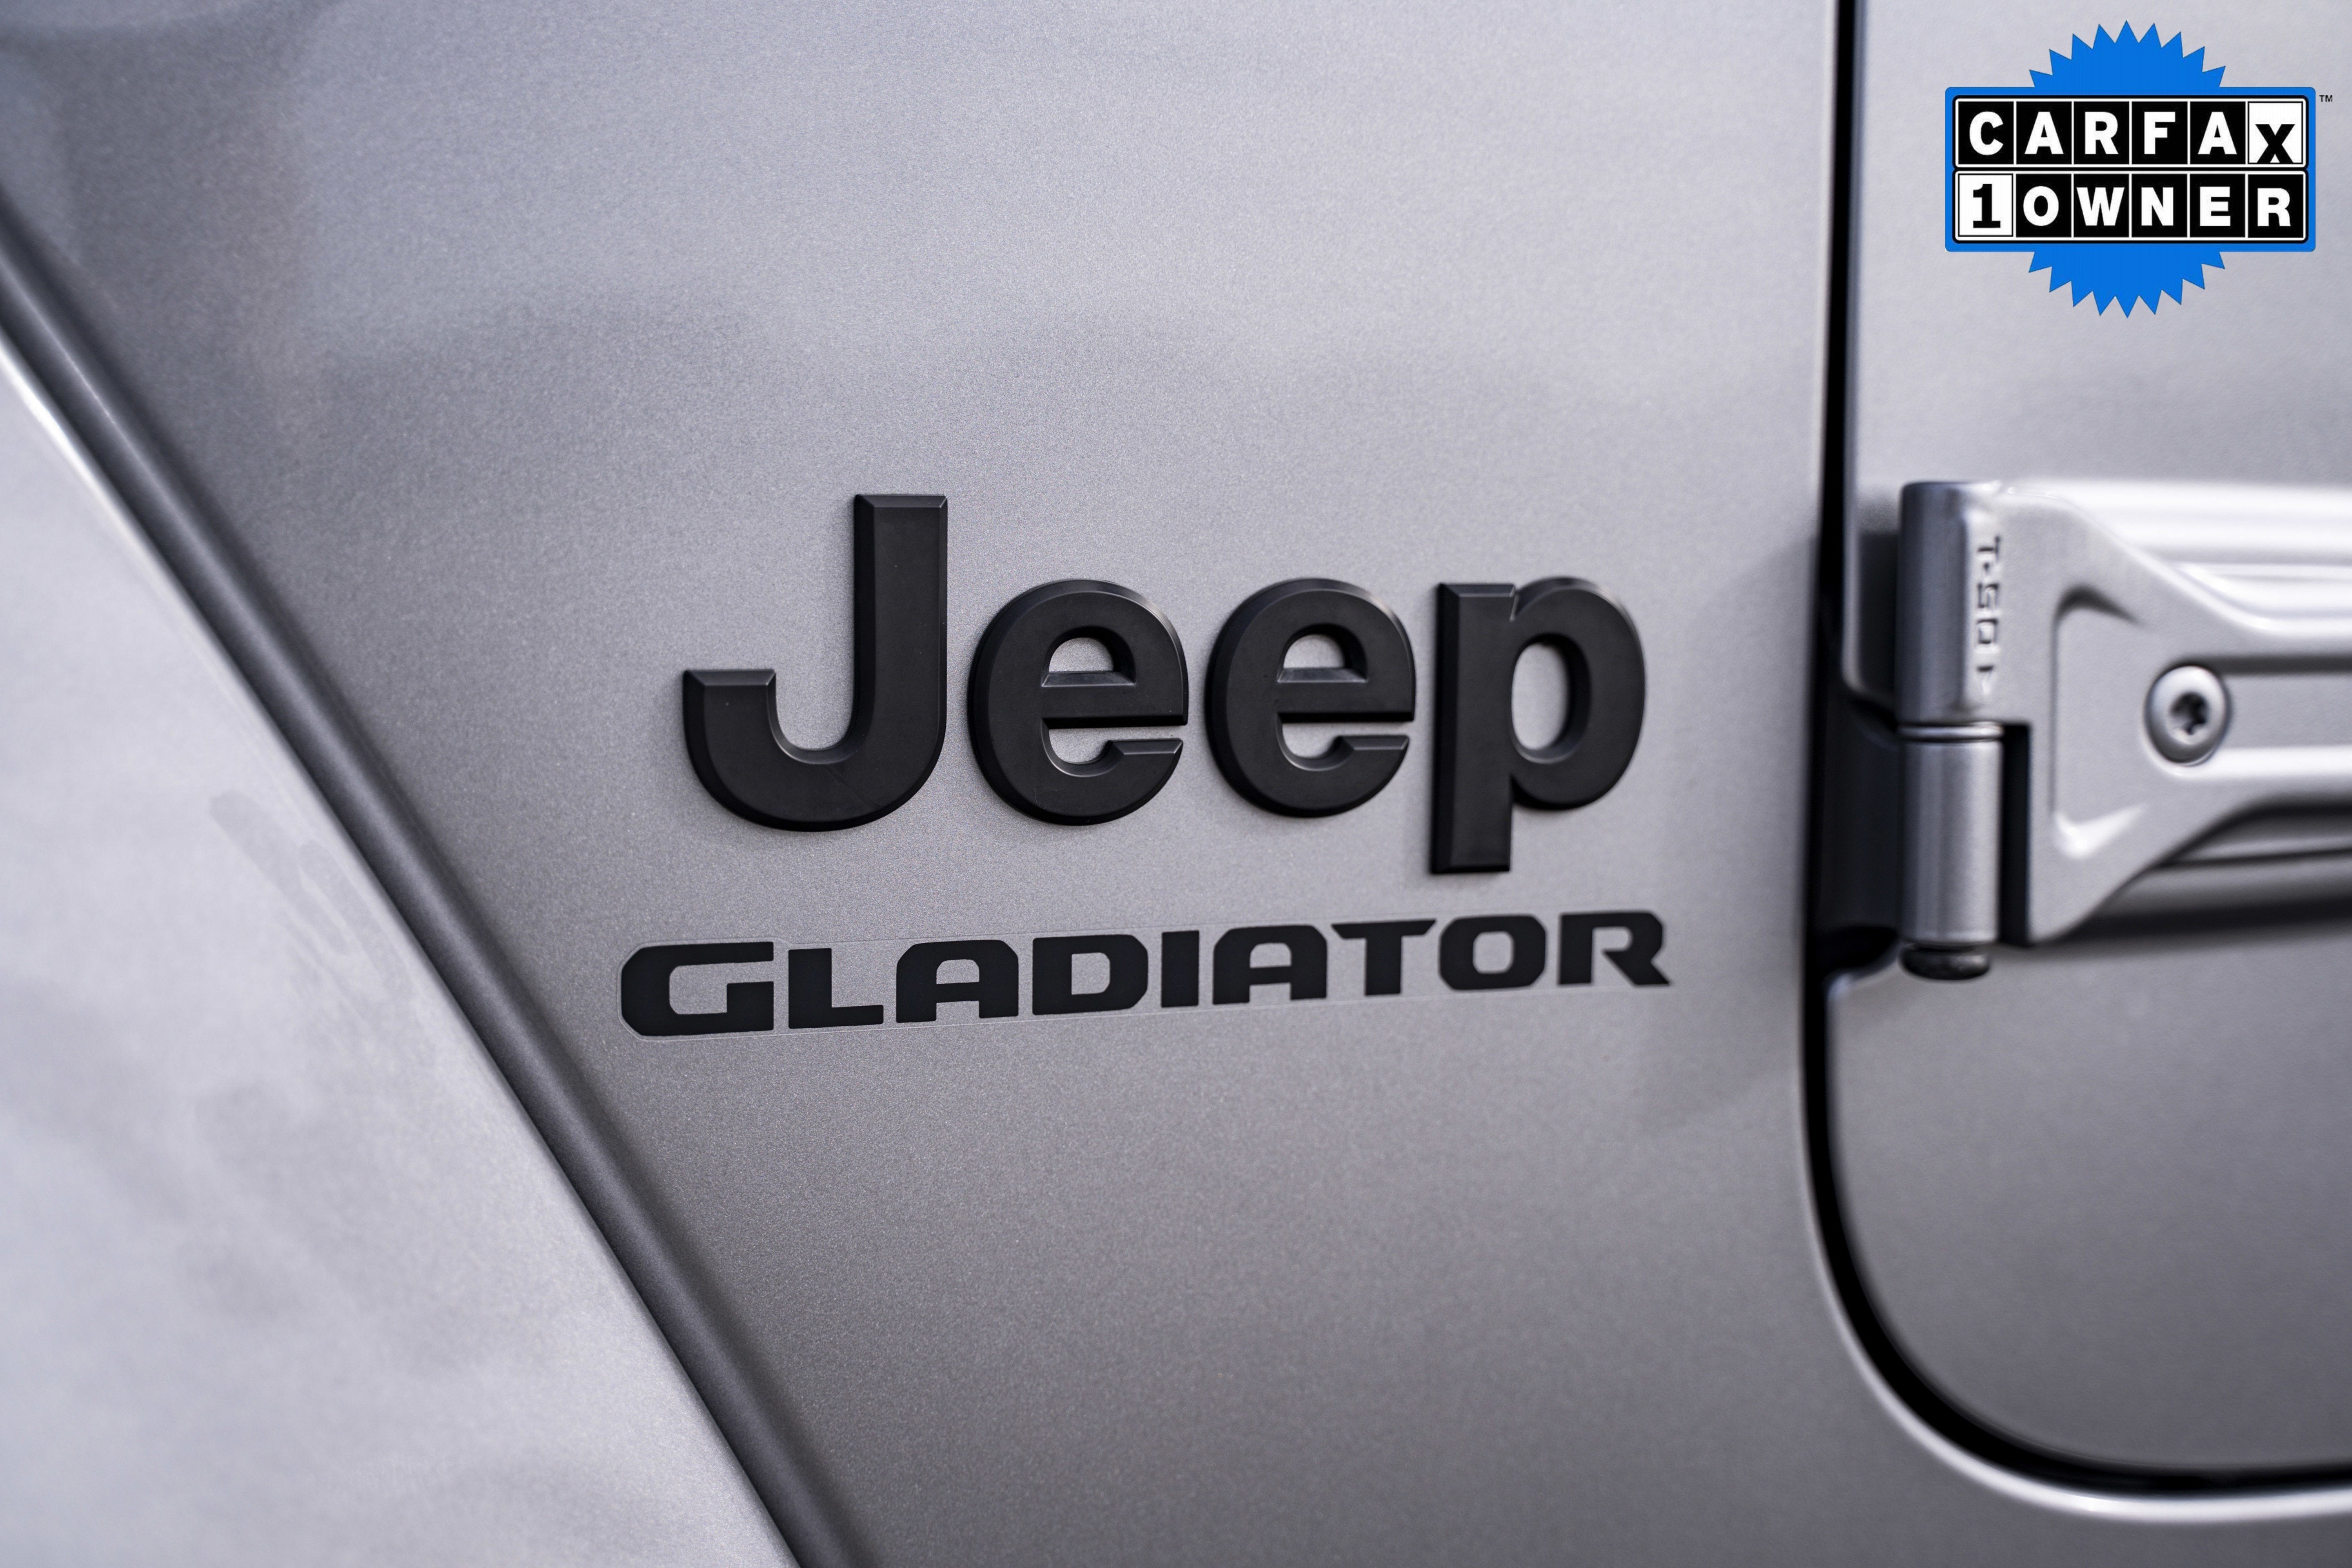 2021 Jeep Gladiator Sport